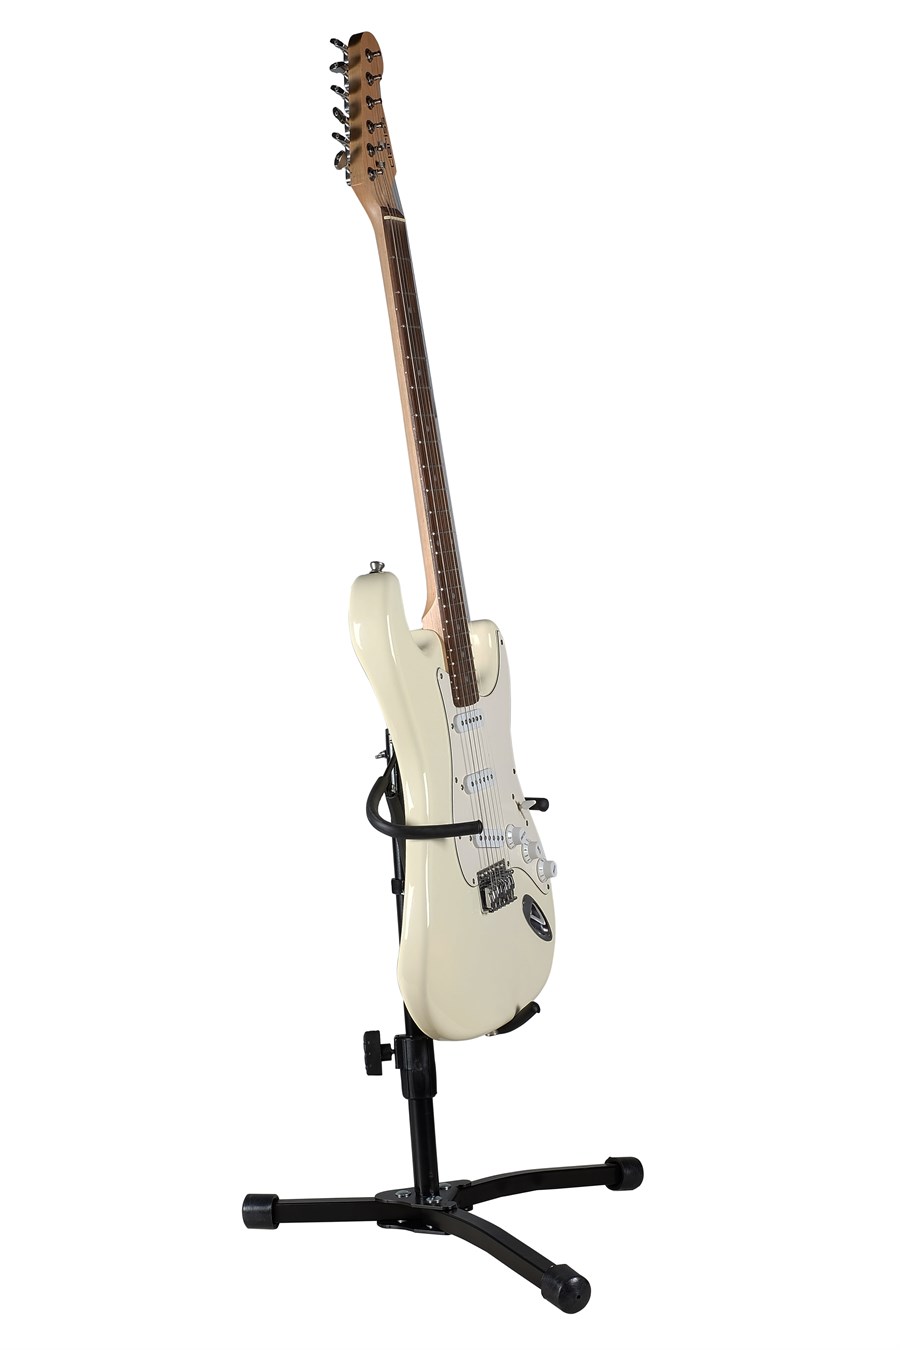 Provoice G-255E Kilitli Elektro Gitar Standı Fiyatı ve Özellikleri  ®MeduMuzikMarket.com'da